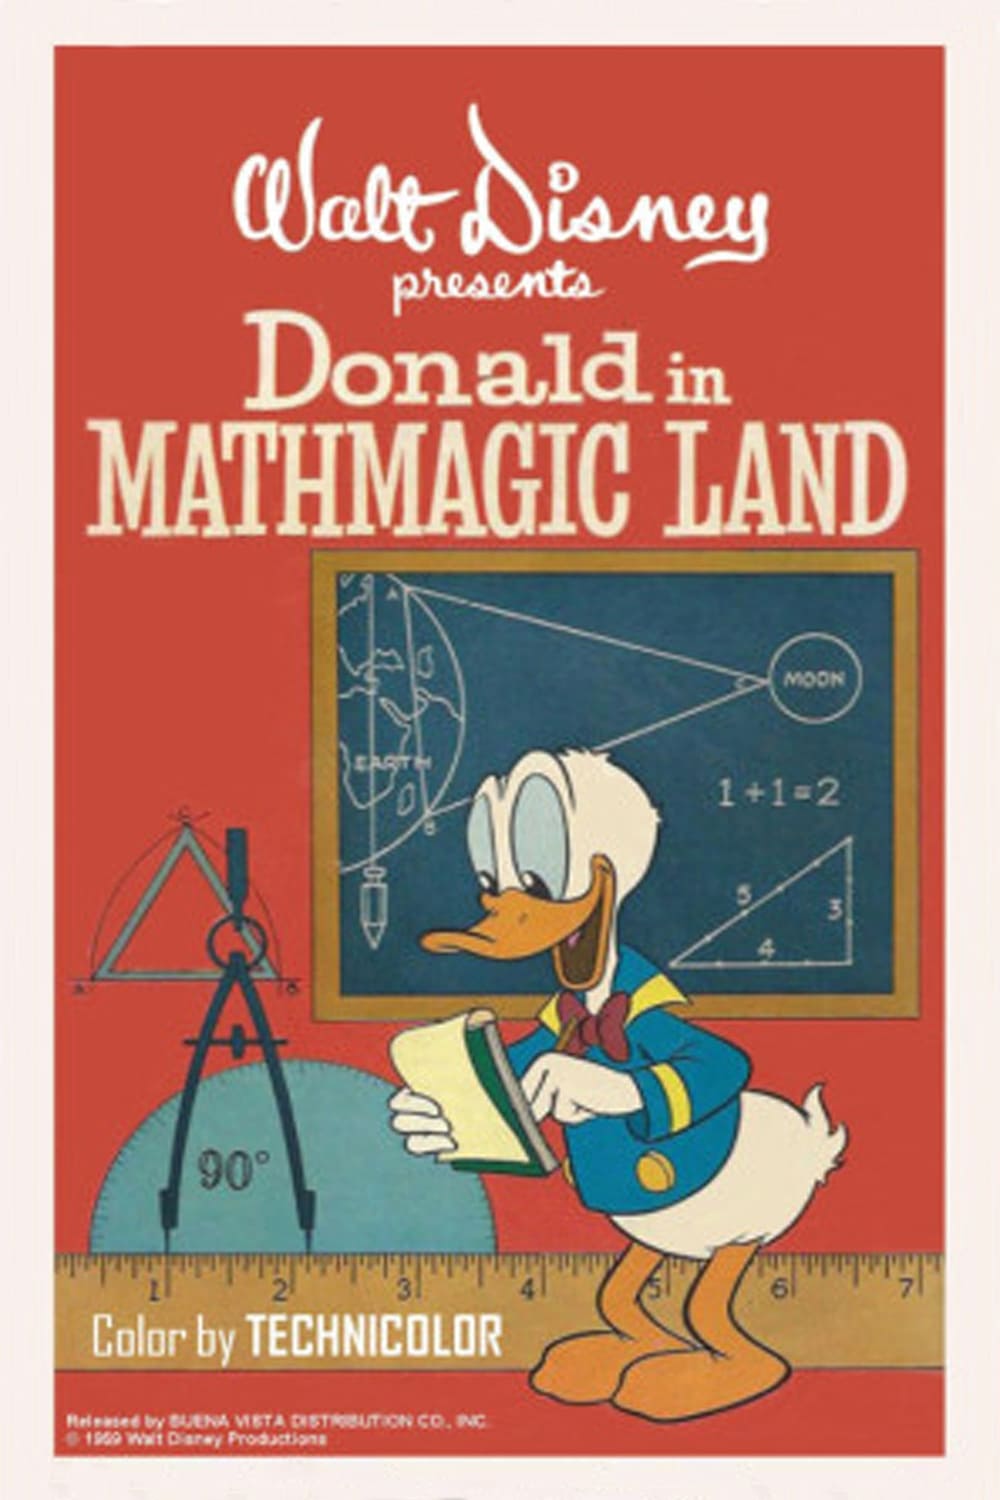 Donald en el País de las Matemáticas (1959)